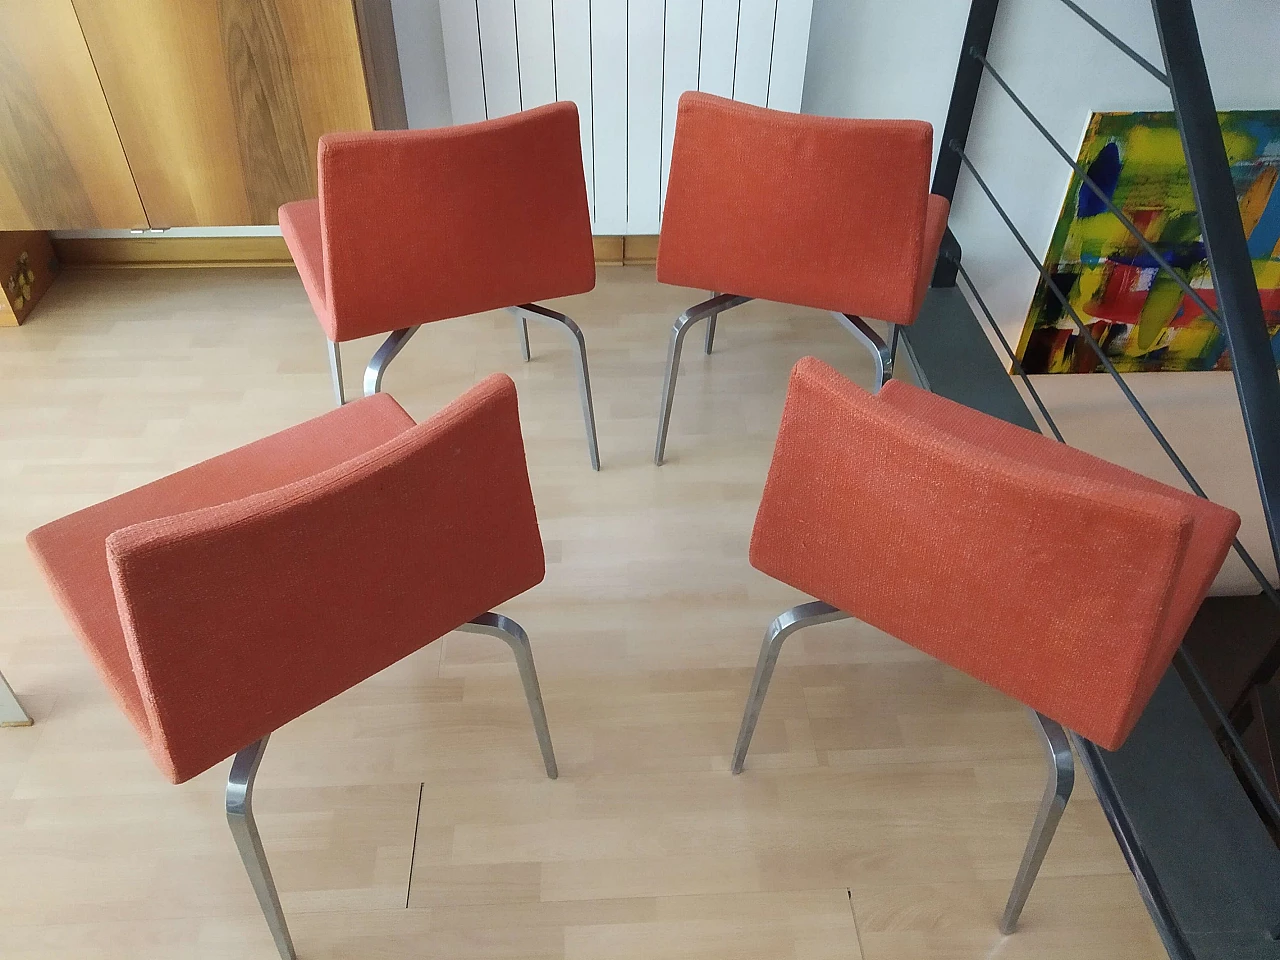 4 Hella Chairs by Mauro Lipparini for MisuraEmme 1477245